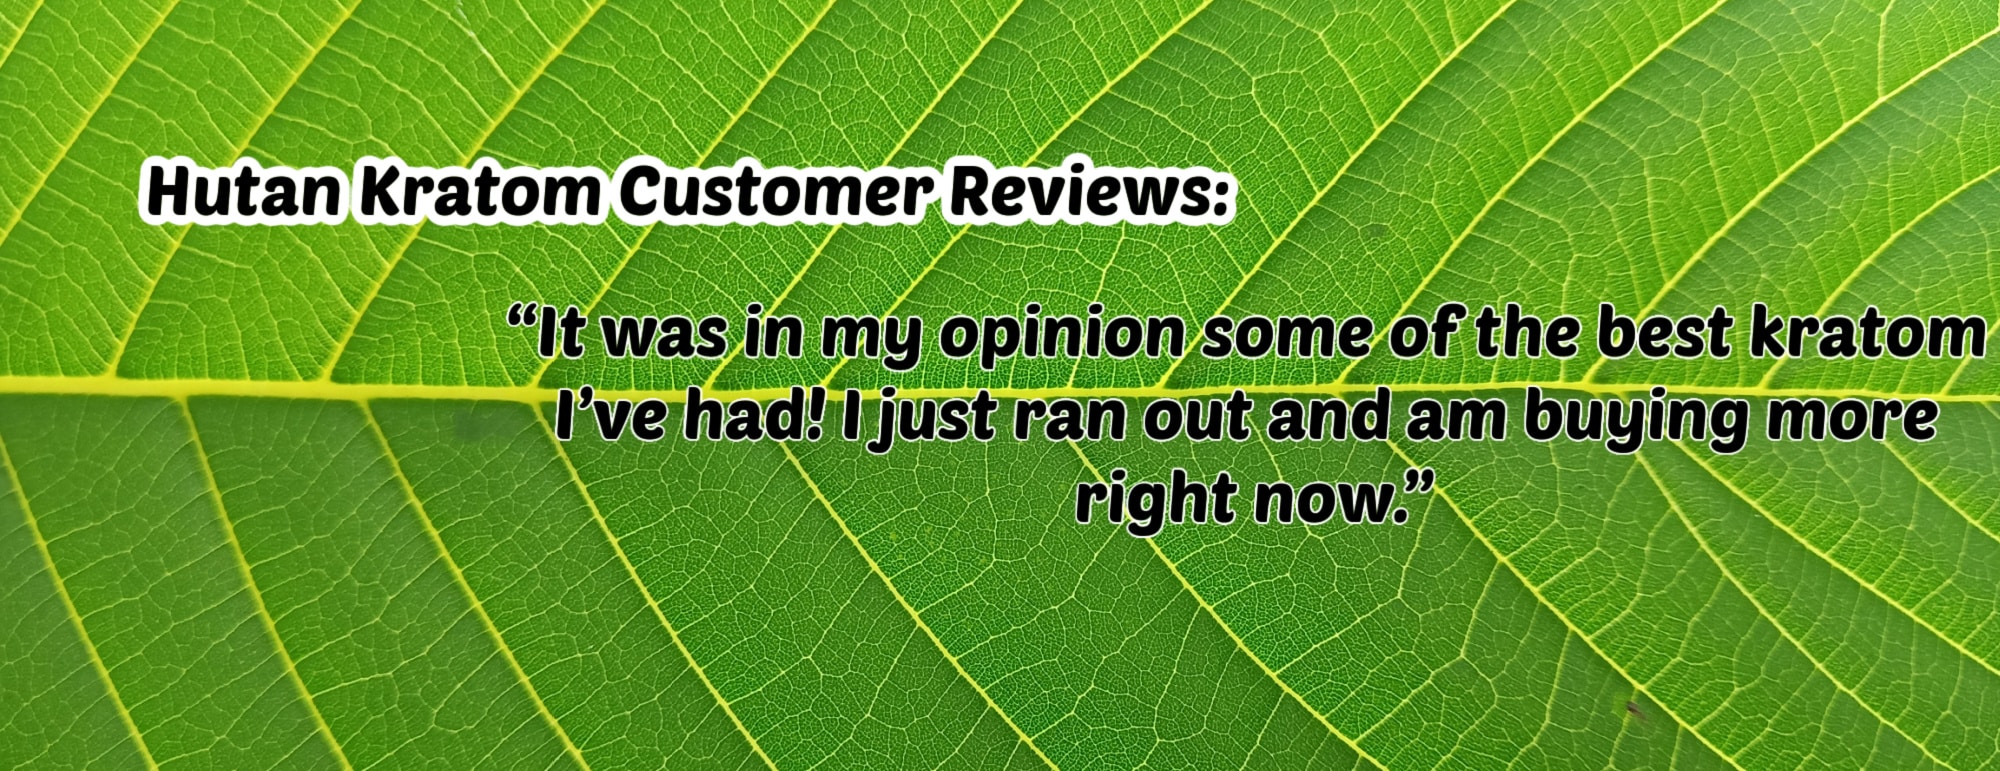 image of hutan kratom customer reviews